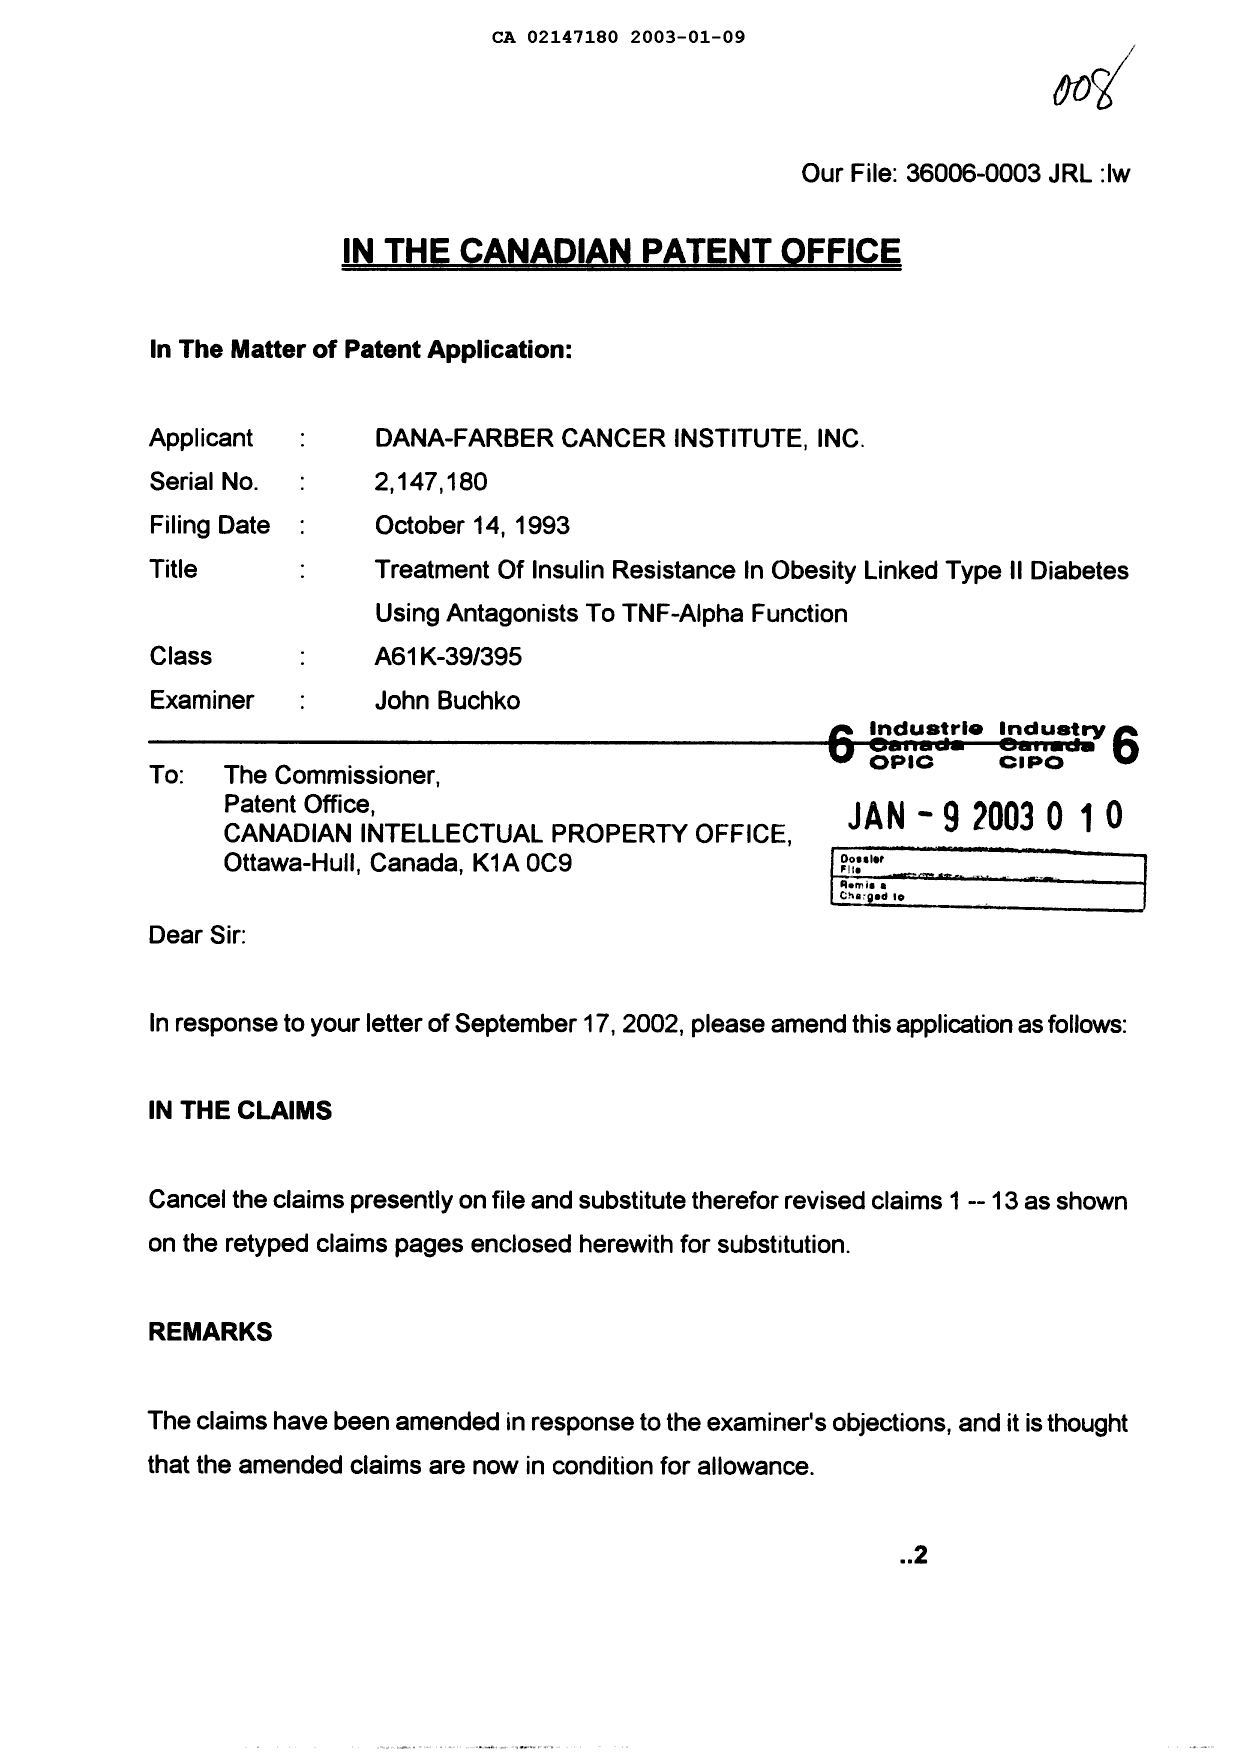 Document de brevet canadien 2147180. Poursuite-Amendment 20030109. Image 1 de 4